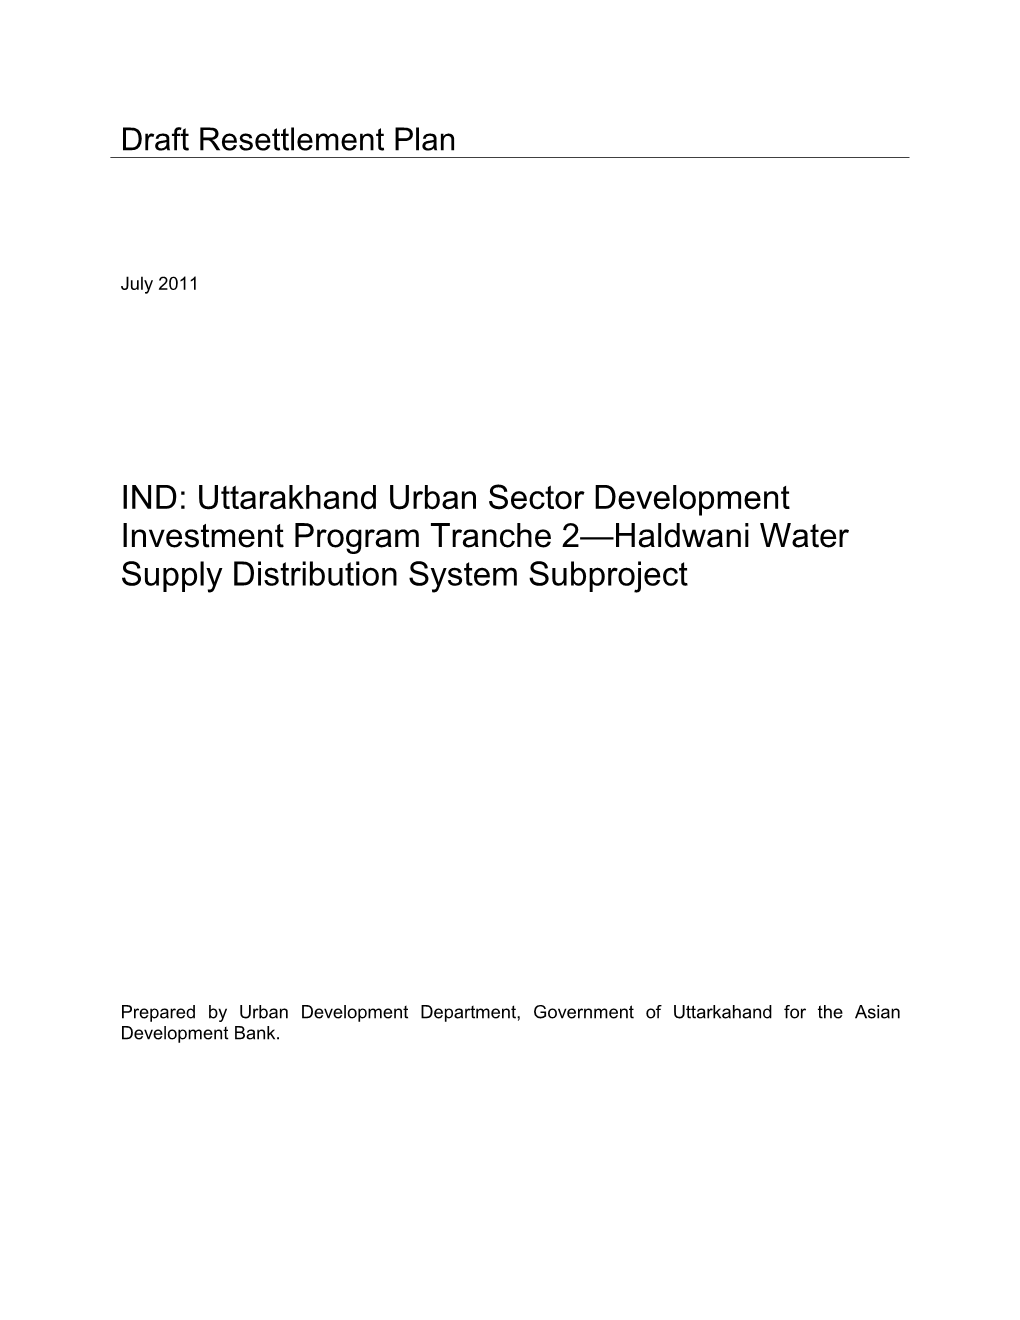 Draft RP: India: Uttarakhand Urban Sector Development Investment Program (Tranche 2)